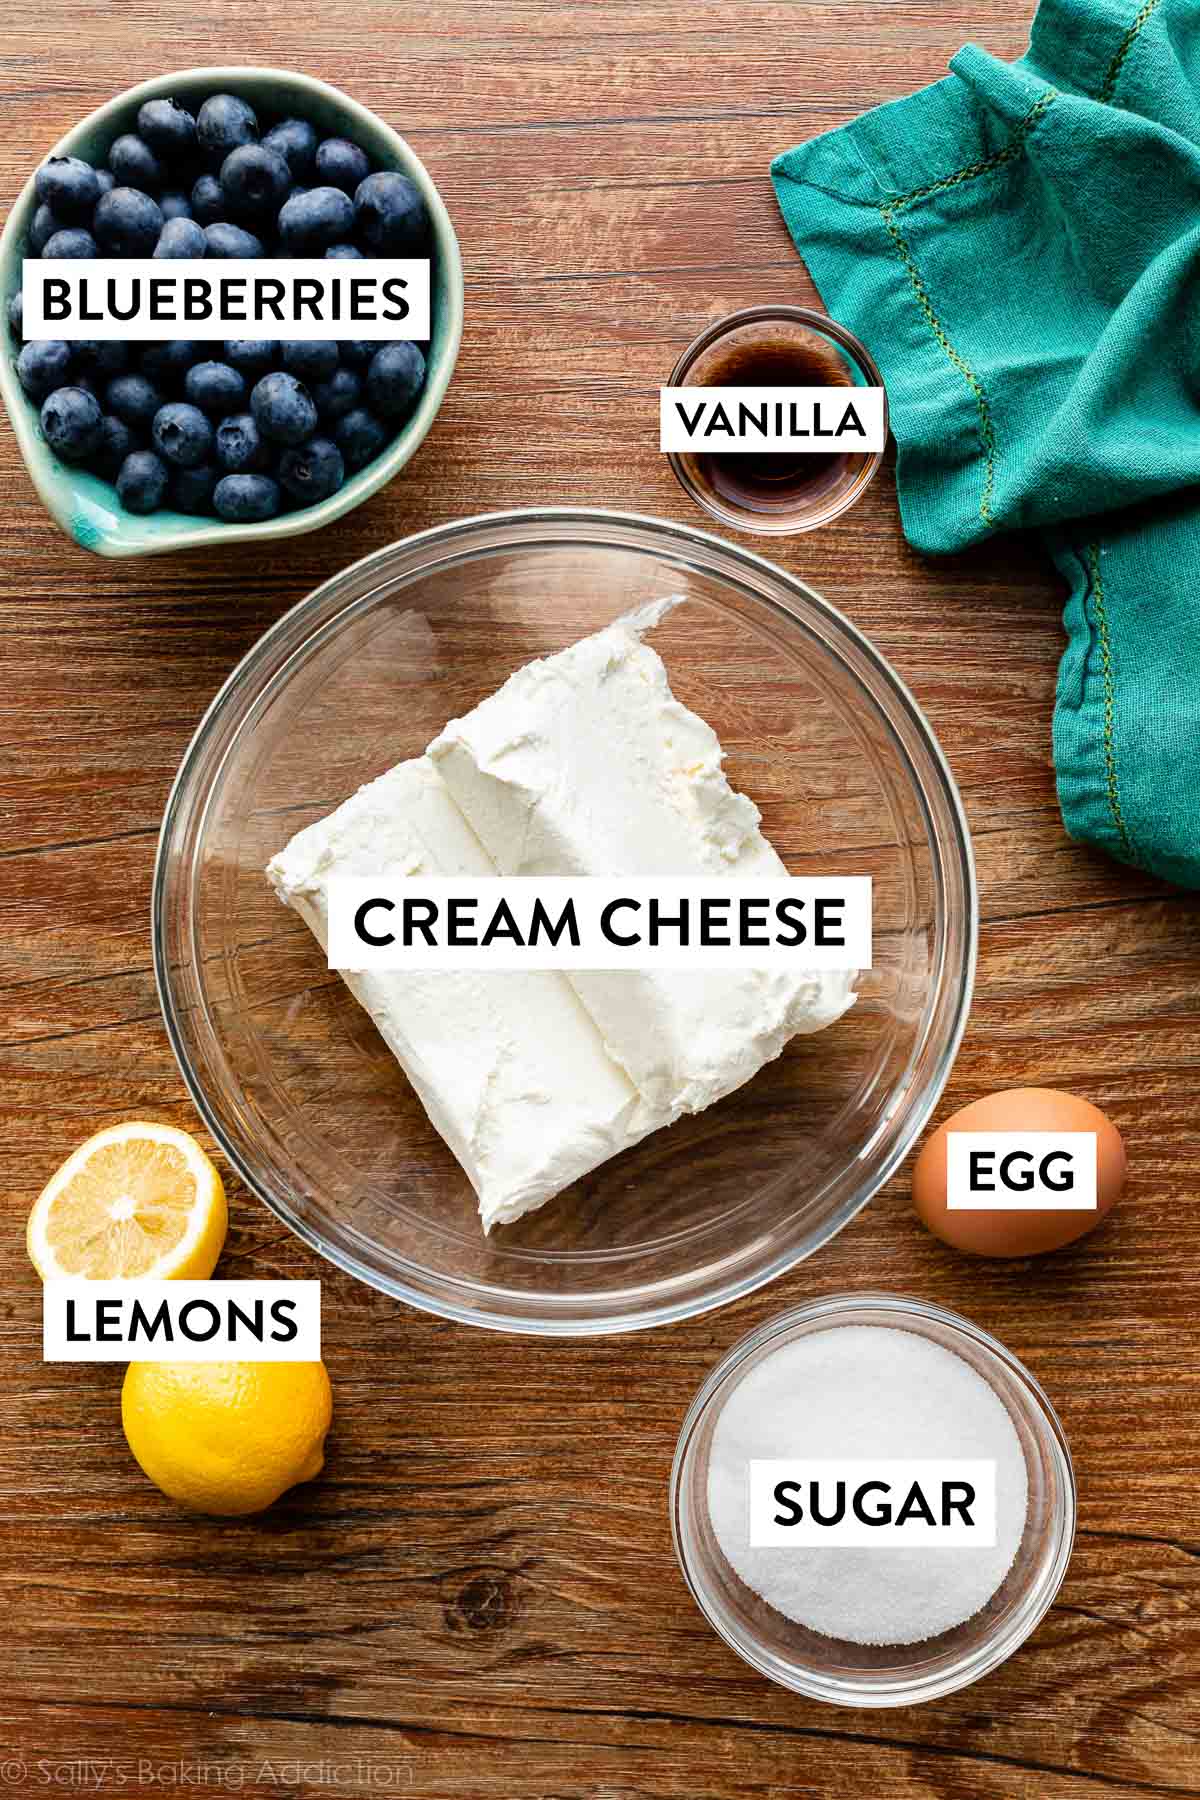 ingredientes en tablero de madera incluyendo queso crema, azúcar, huevo, vainilla, arándanos y limón.